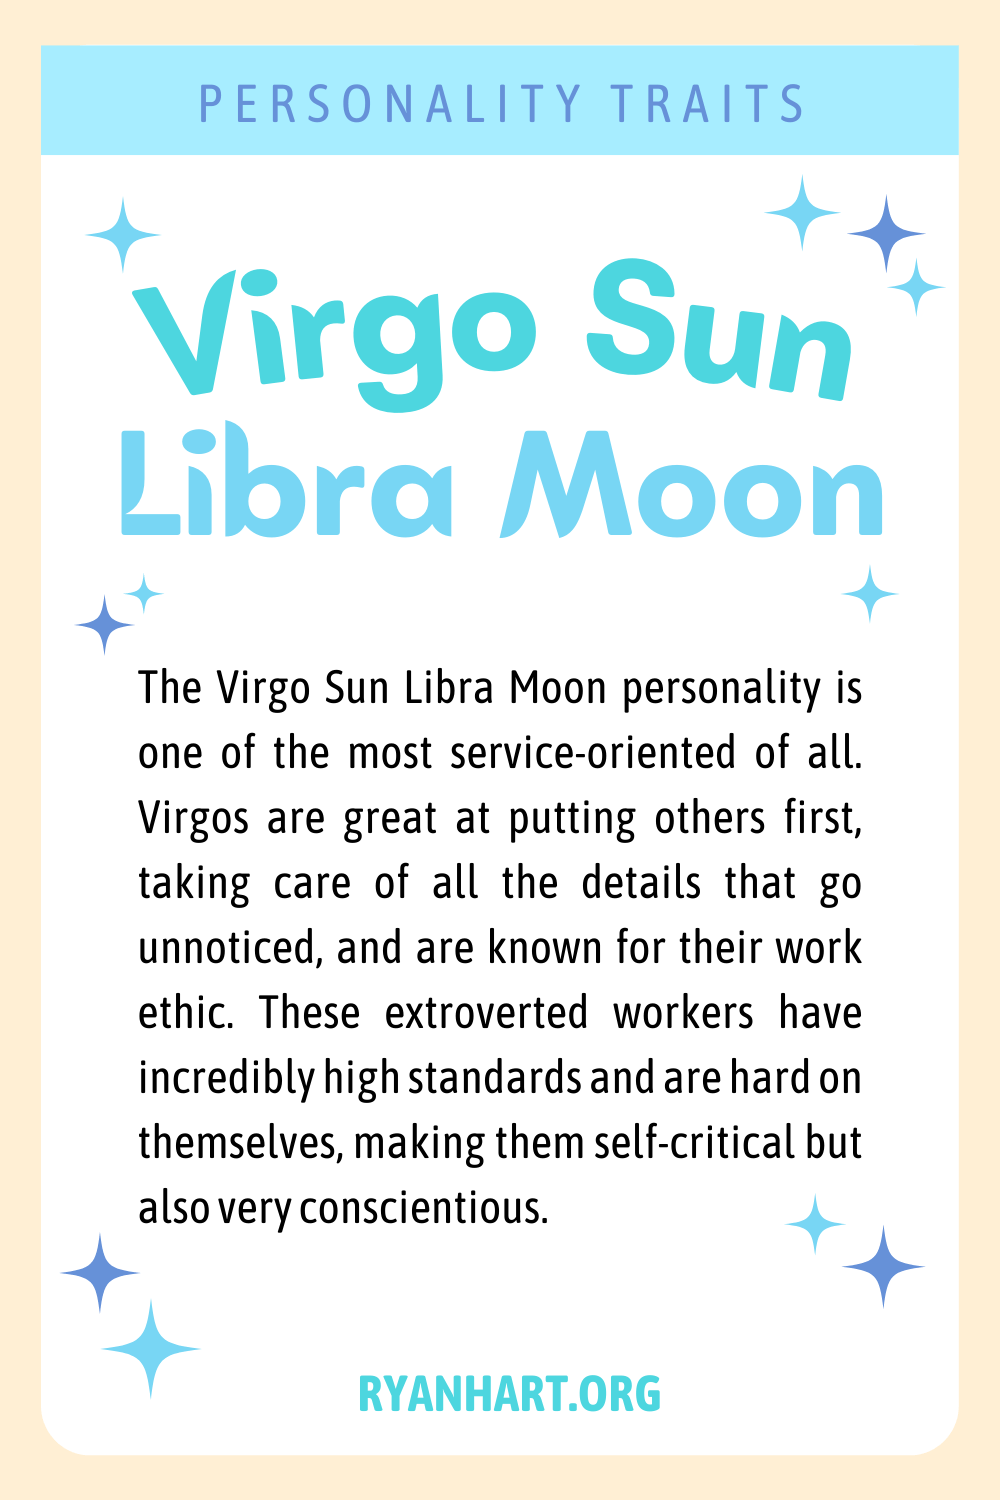 Virgo Sun Libra Moon Description